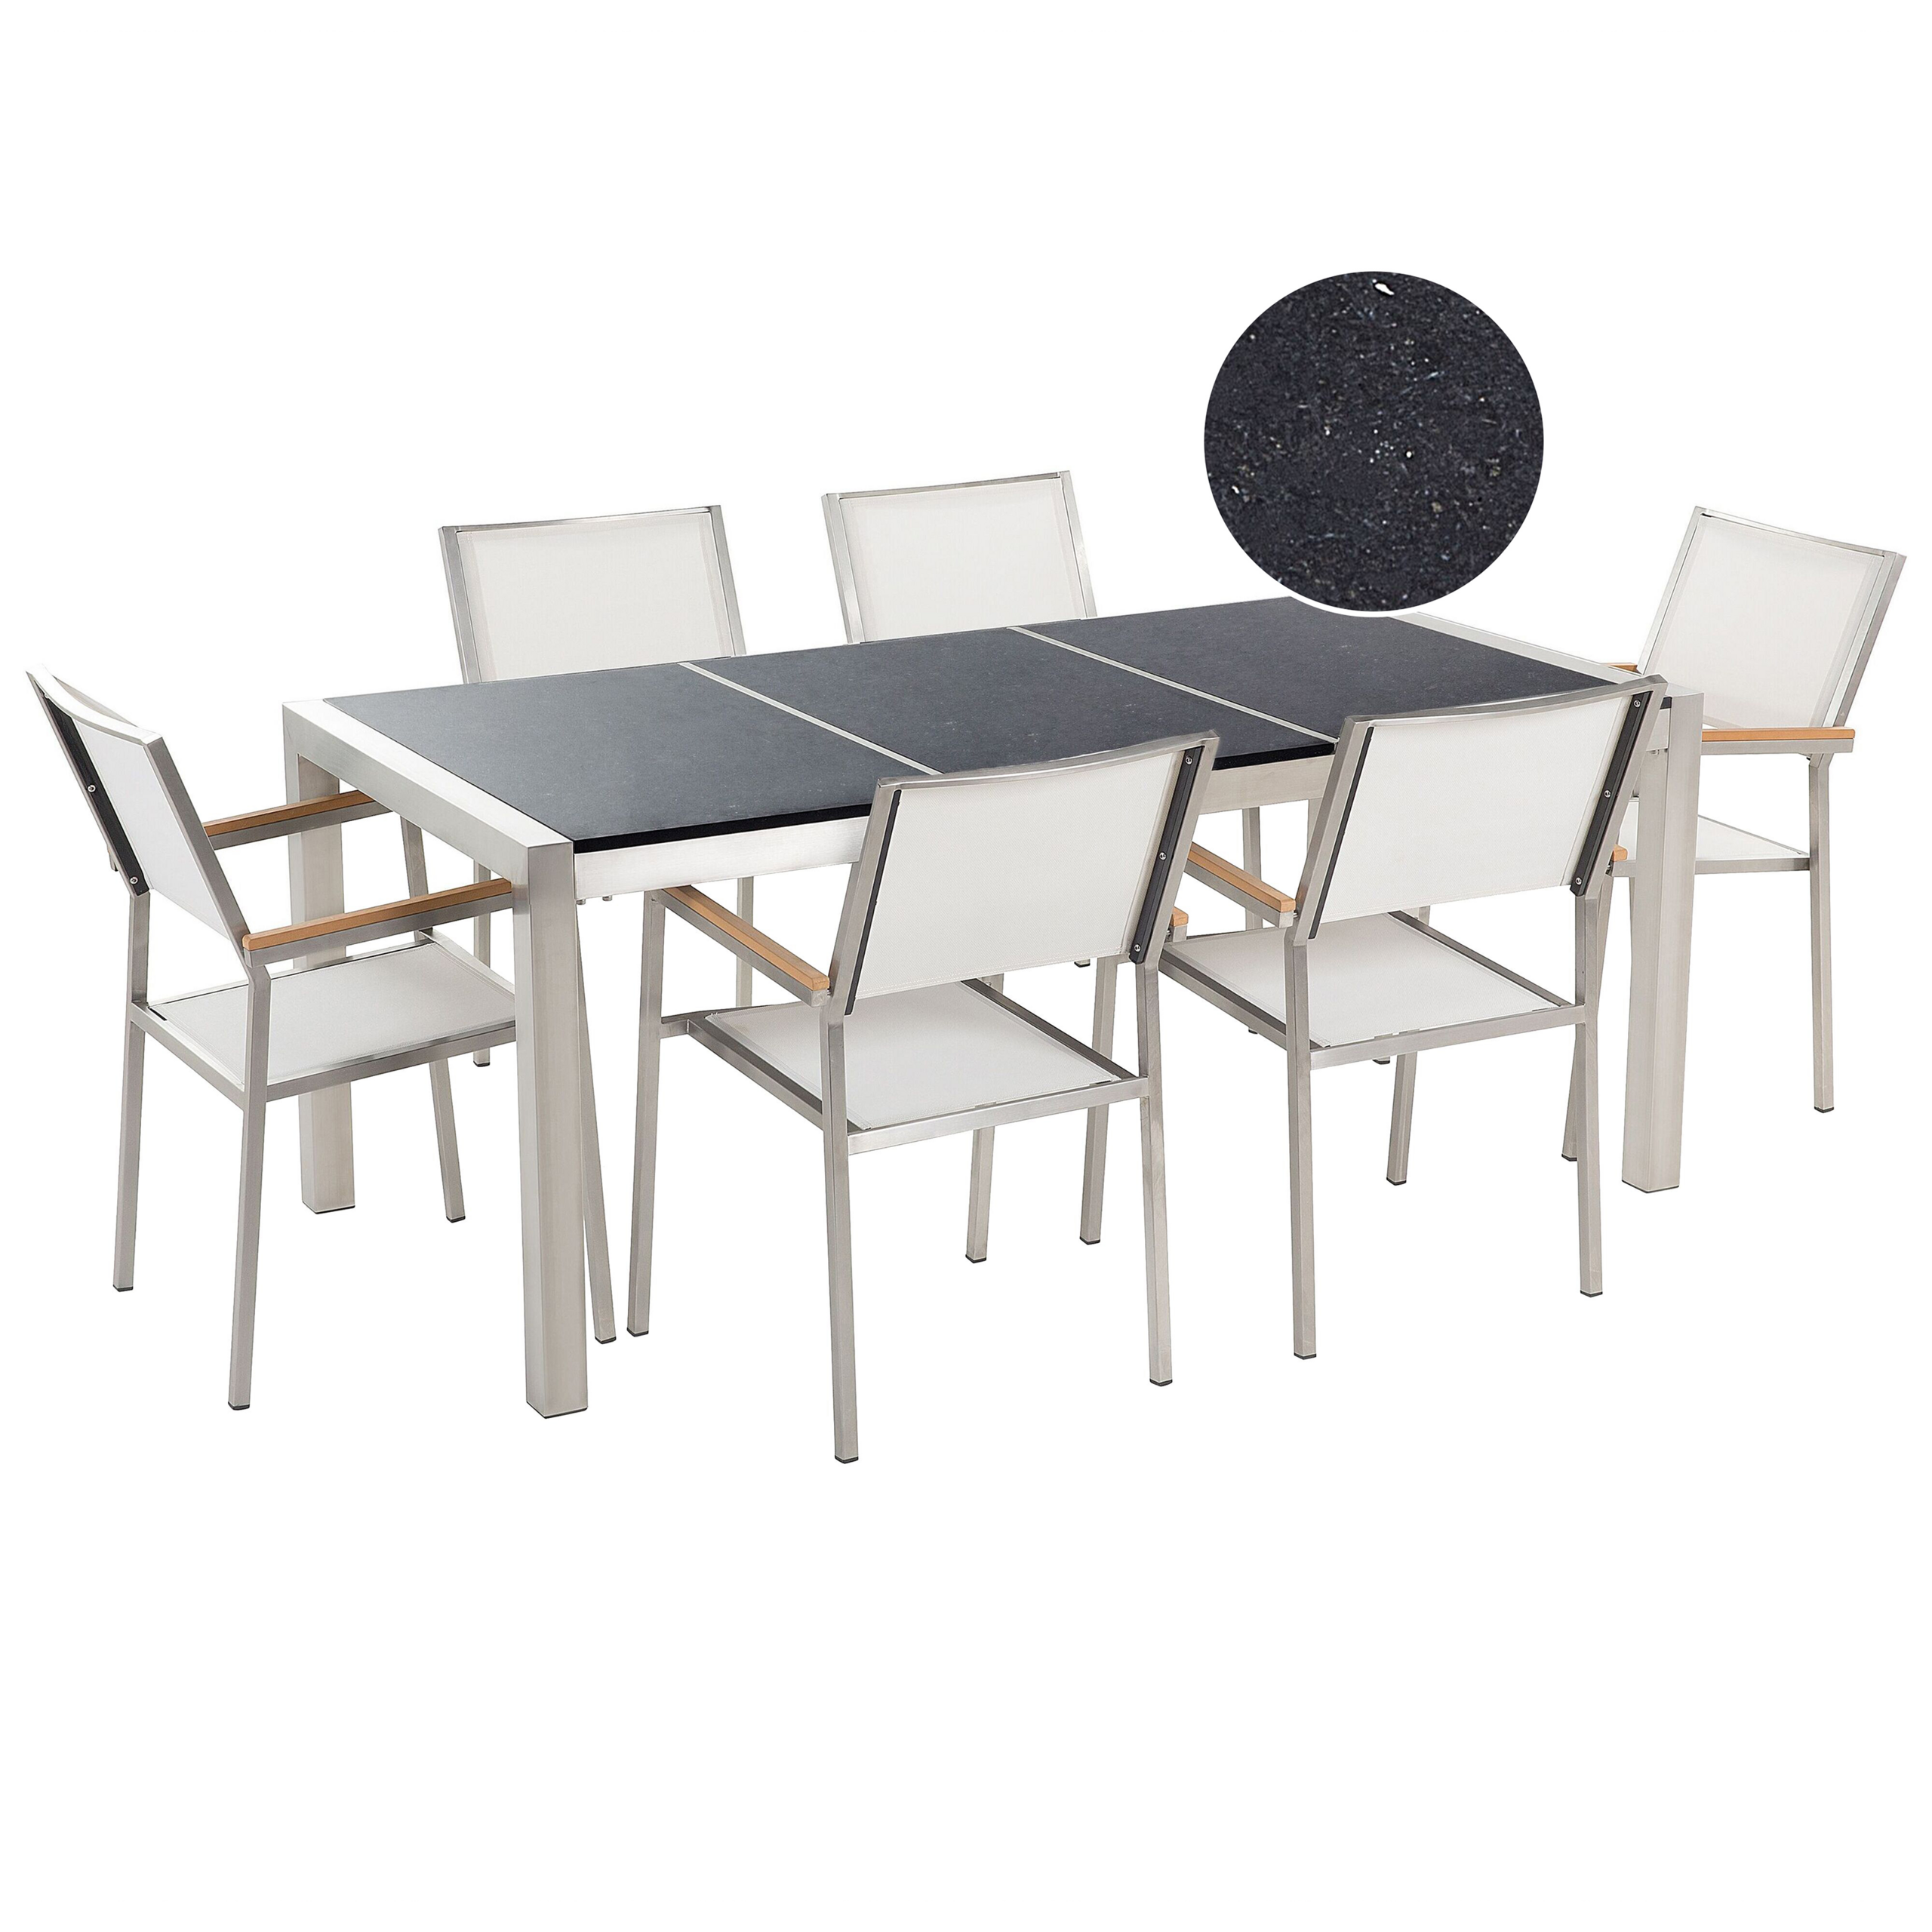 Beliani Conjunto de jantar para jardim mesa com tampo de granito polido preto 180 x 90 cm e 6 cadeiras têxtil brancas estrutura aço inoxidável